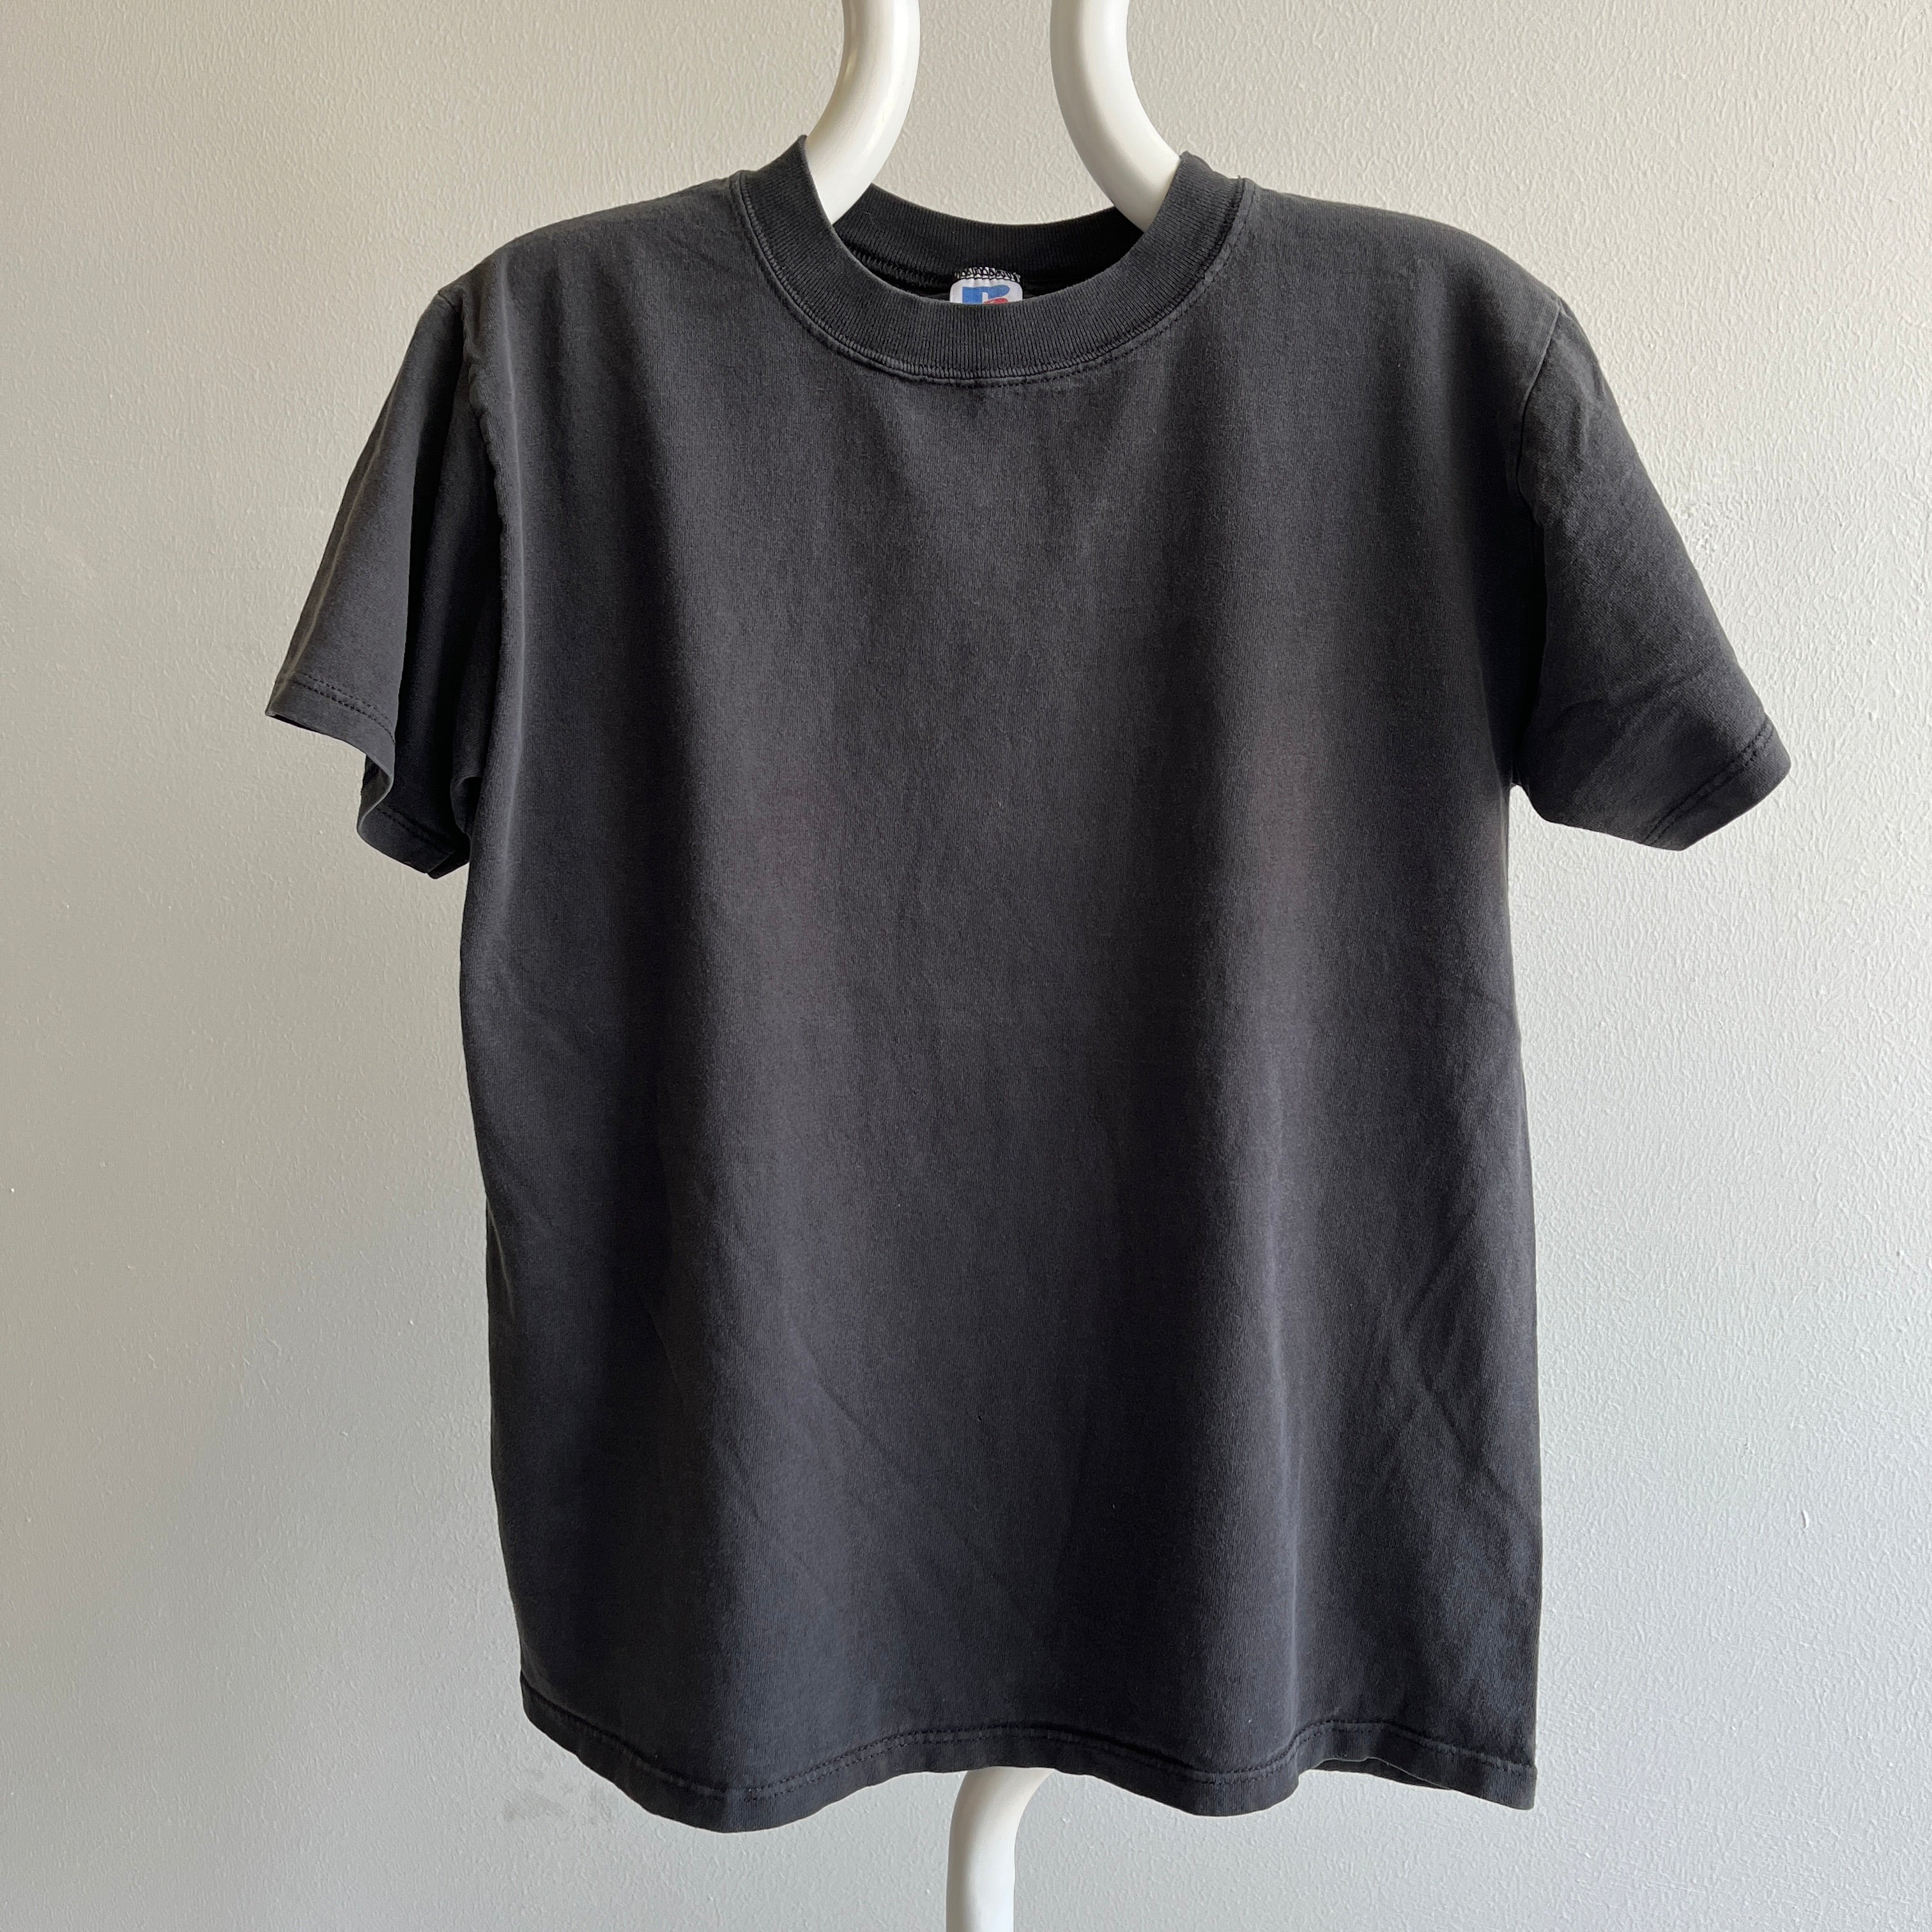 T-shirt noir vierge délavé des années 1980/90 par Russell